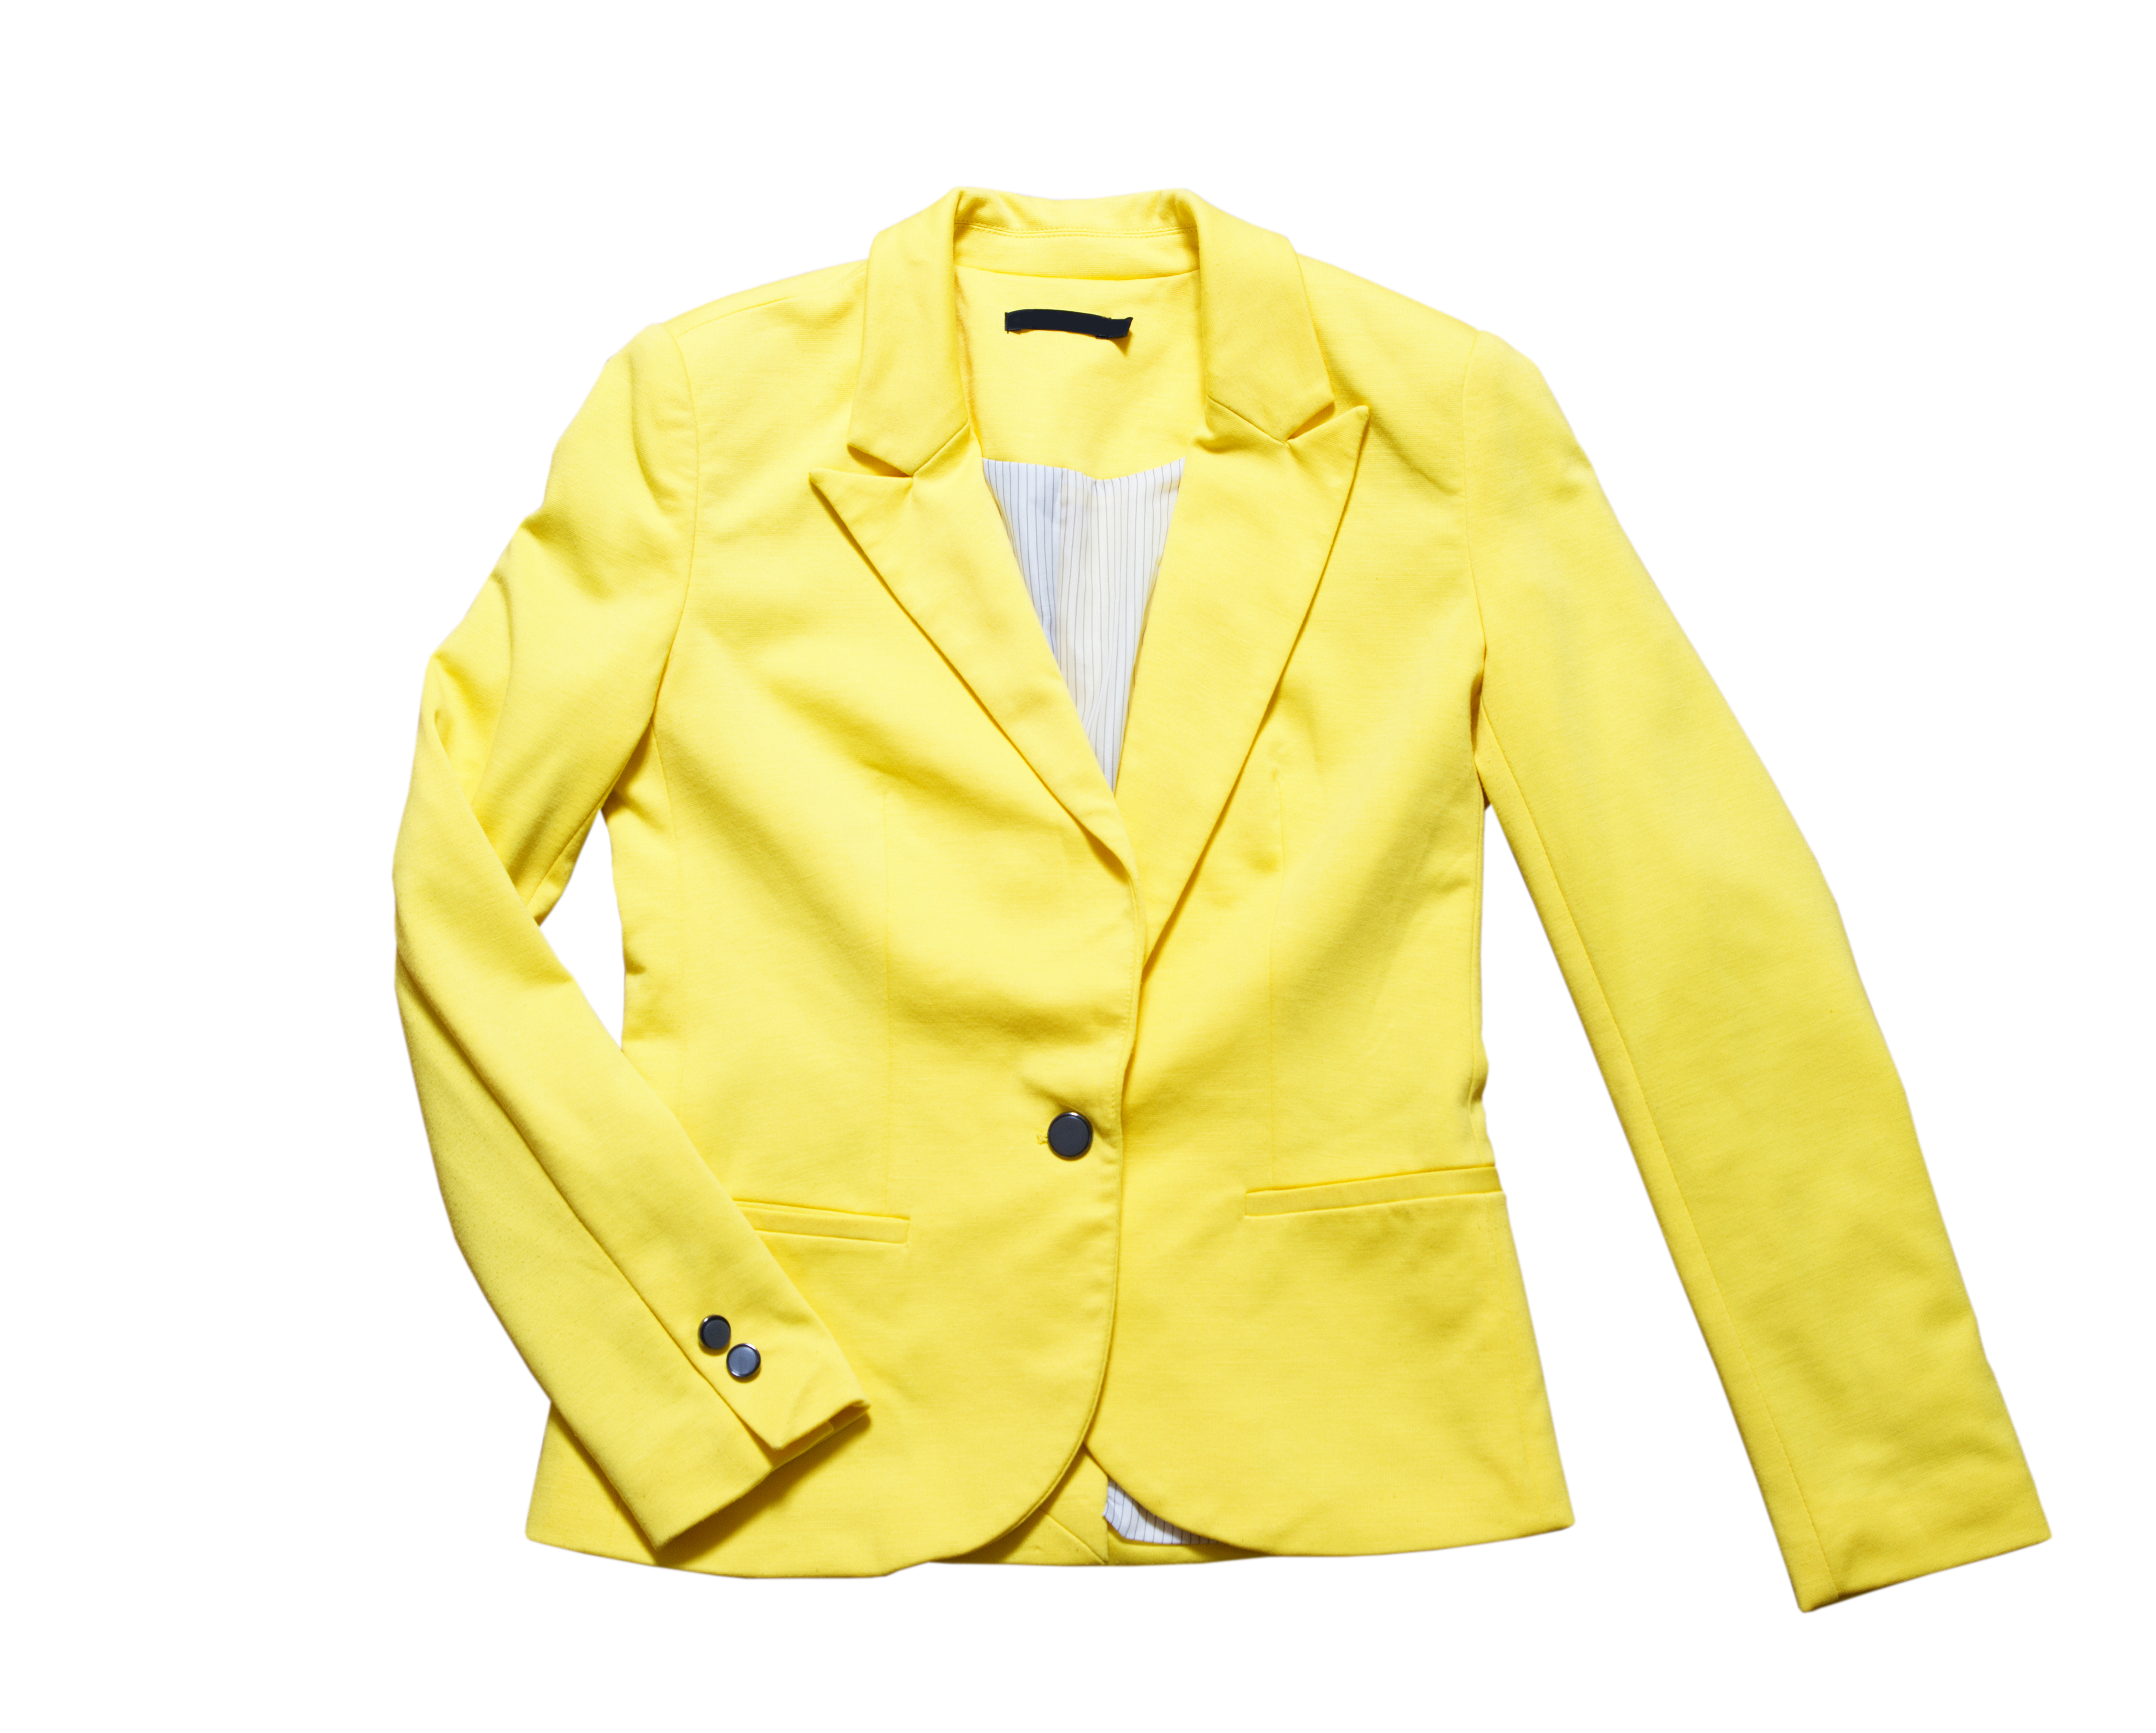 Una chaqueta amarilla clásica | Fuente: Shutterstock